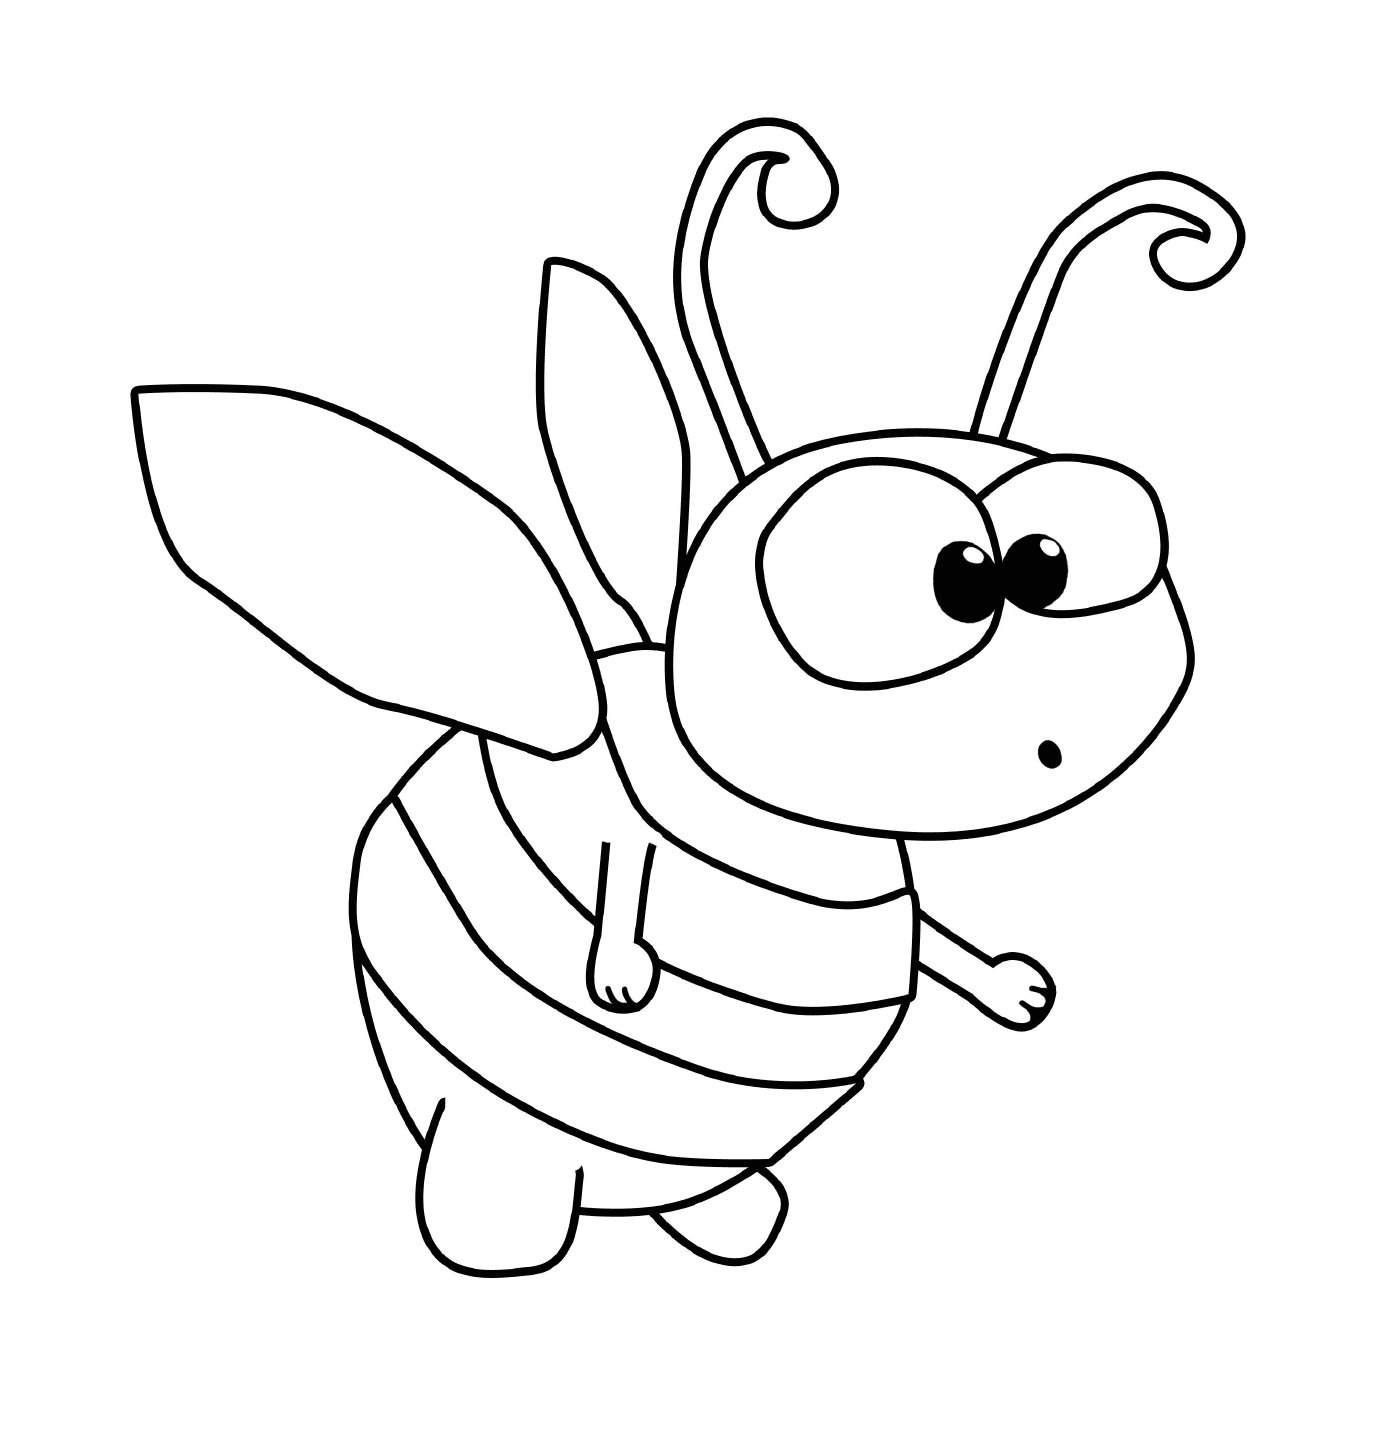  Bambino carino ape 